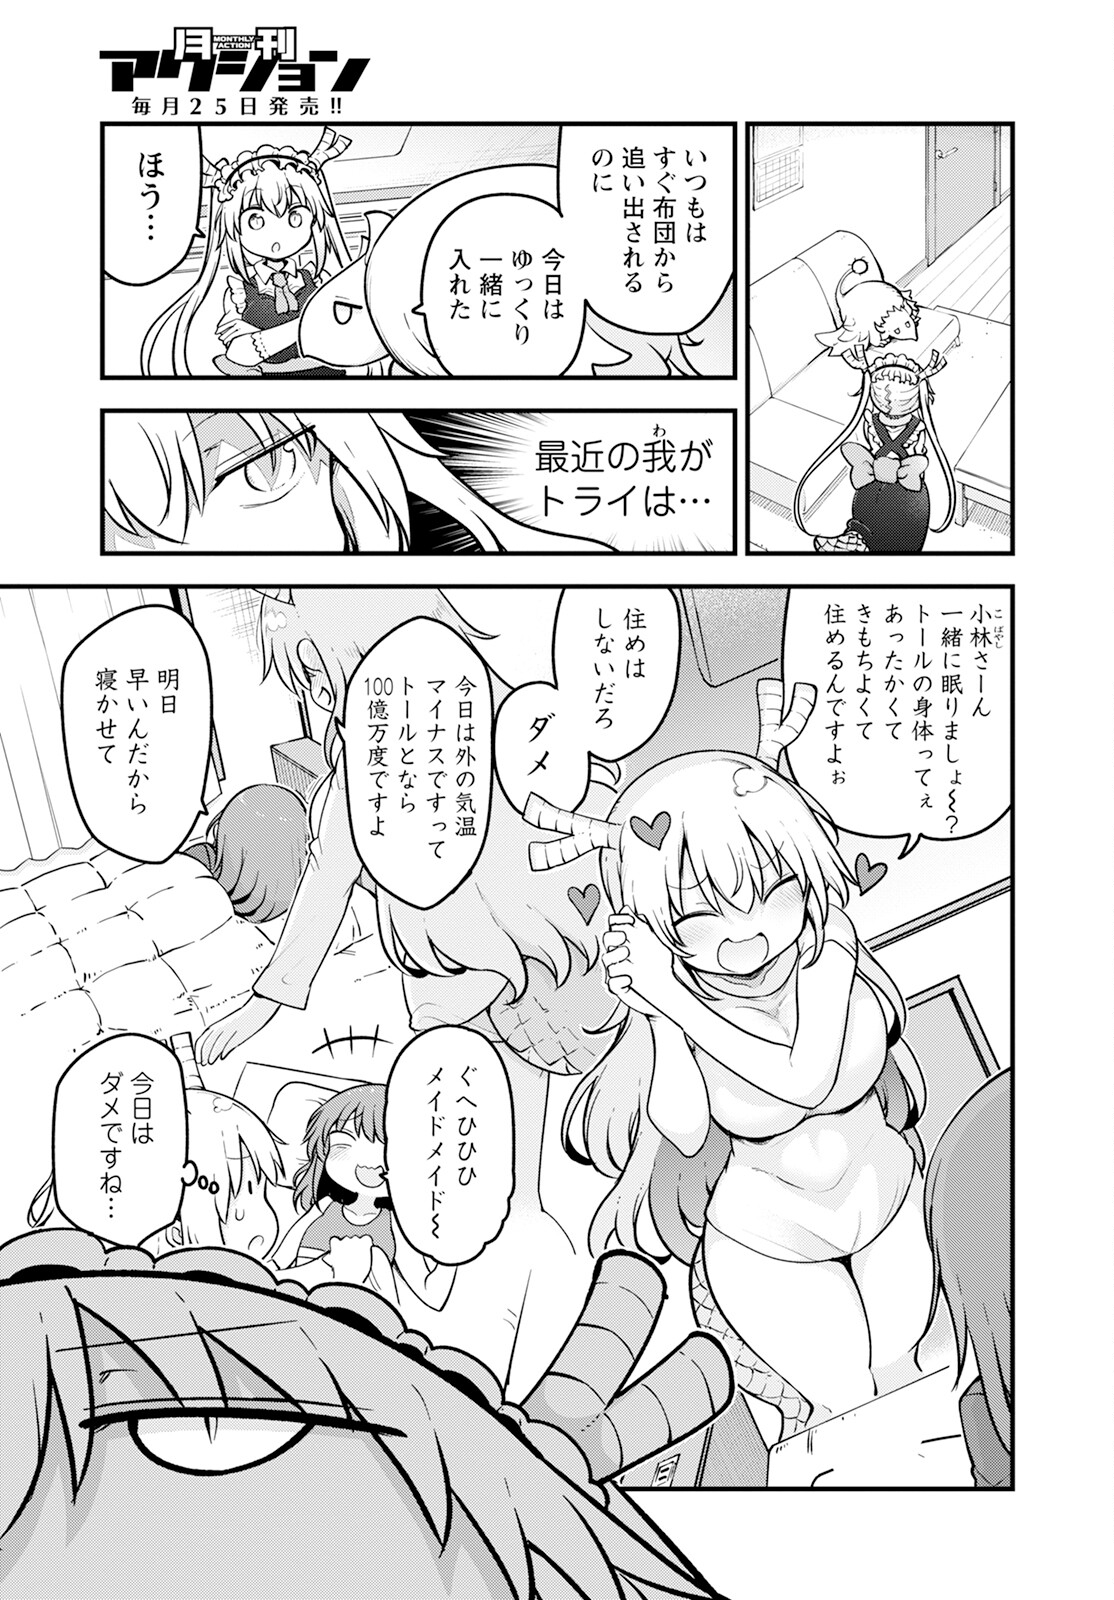 Kobayashi-san Chi no Maid Dragon - Chapter 140 - Page 3